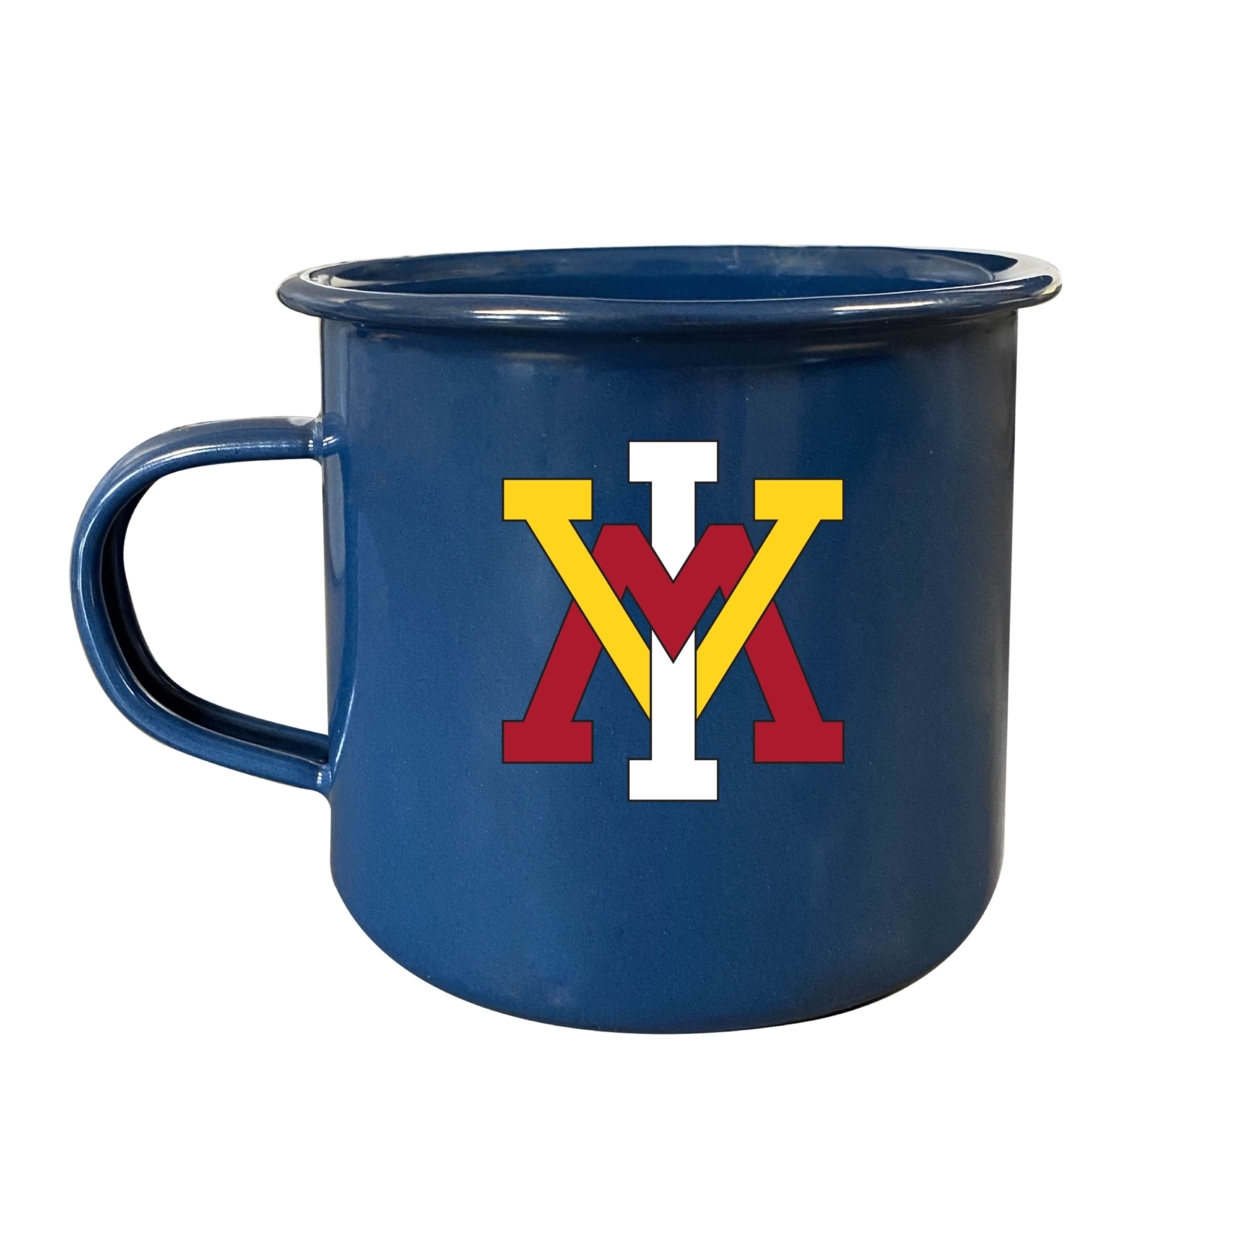 VMI Keydets Tin Camper Coffee Mug - Choose Your Color - Navy